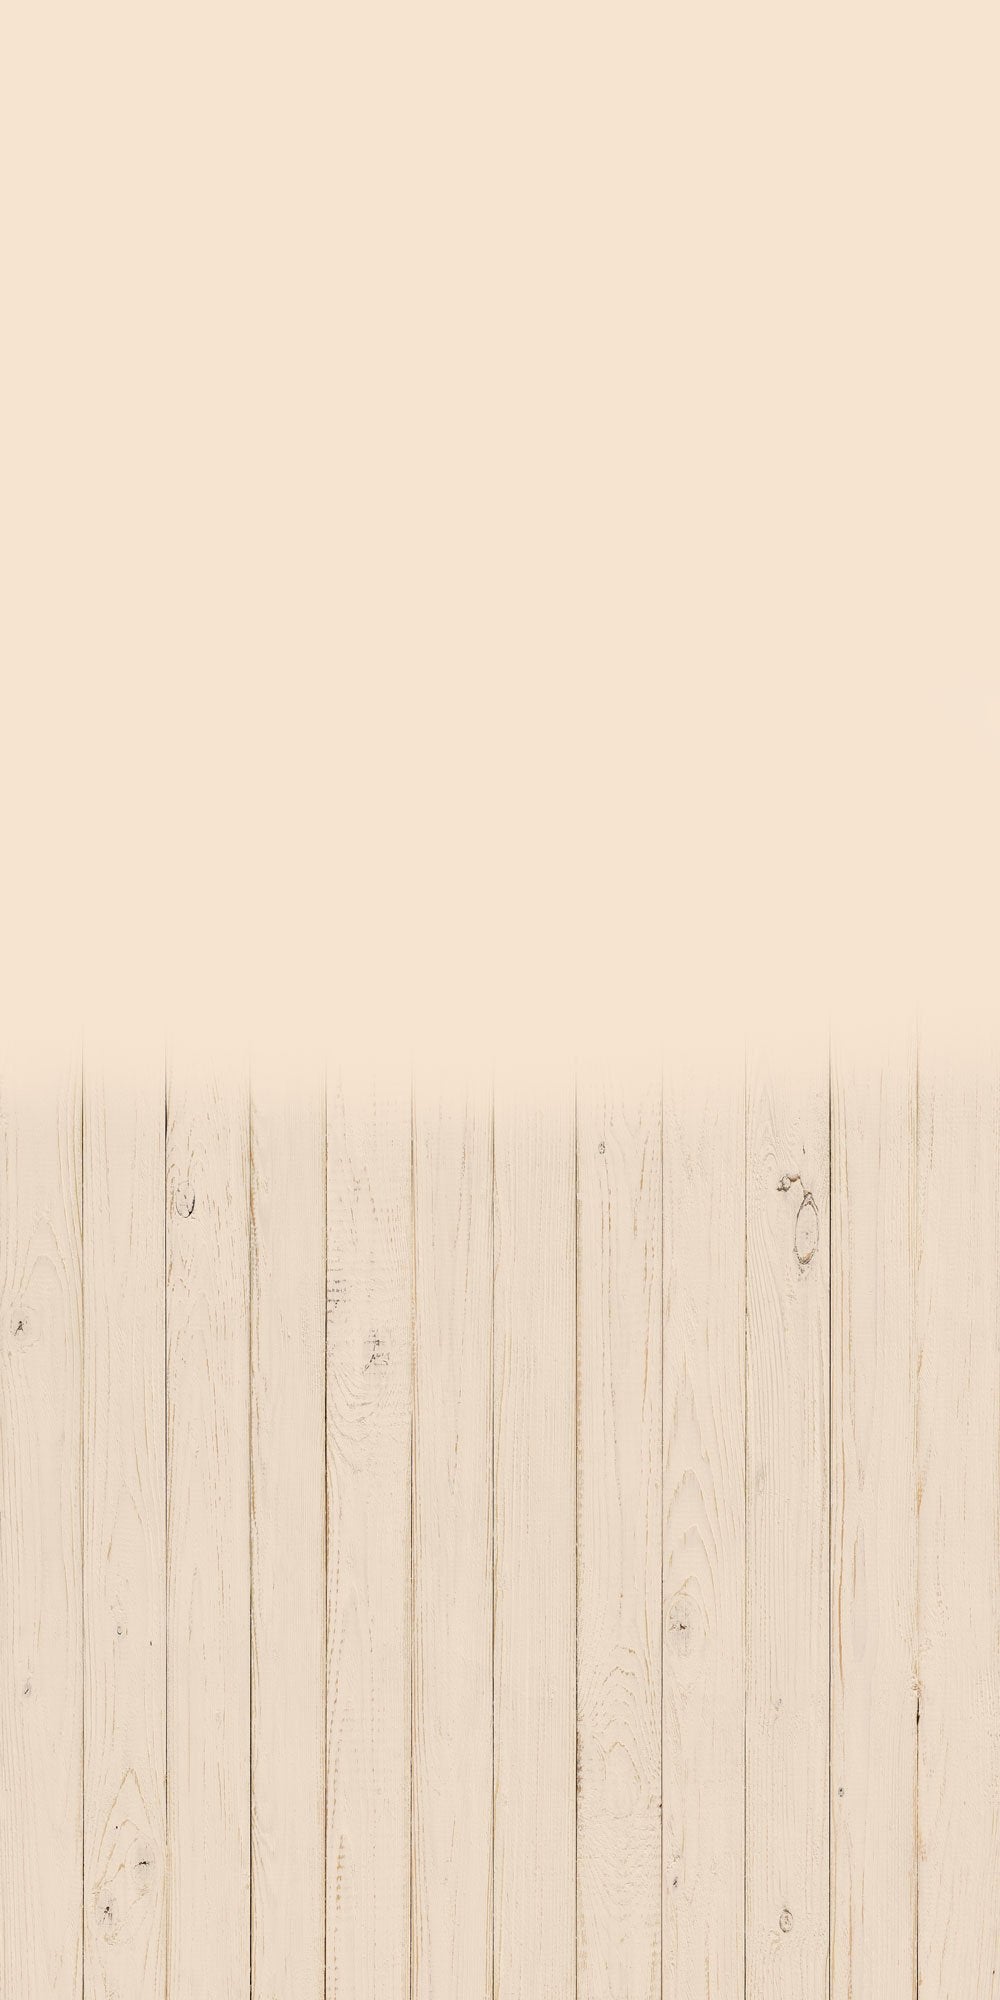 Kate Balayage la toile de fond de plancher en bois crème solide pour la photographie